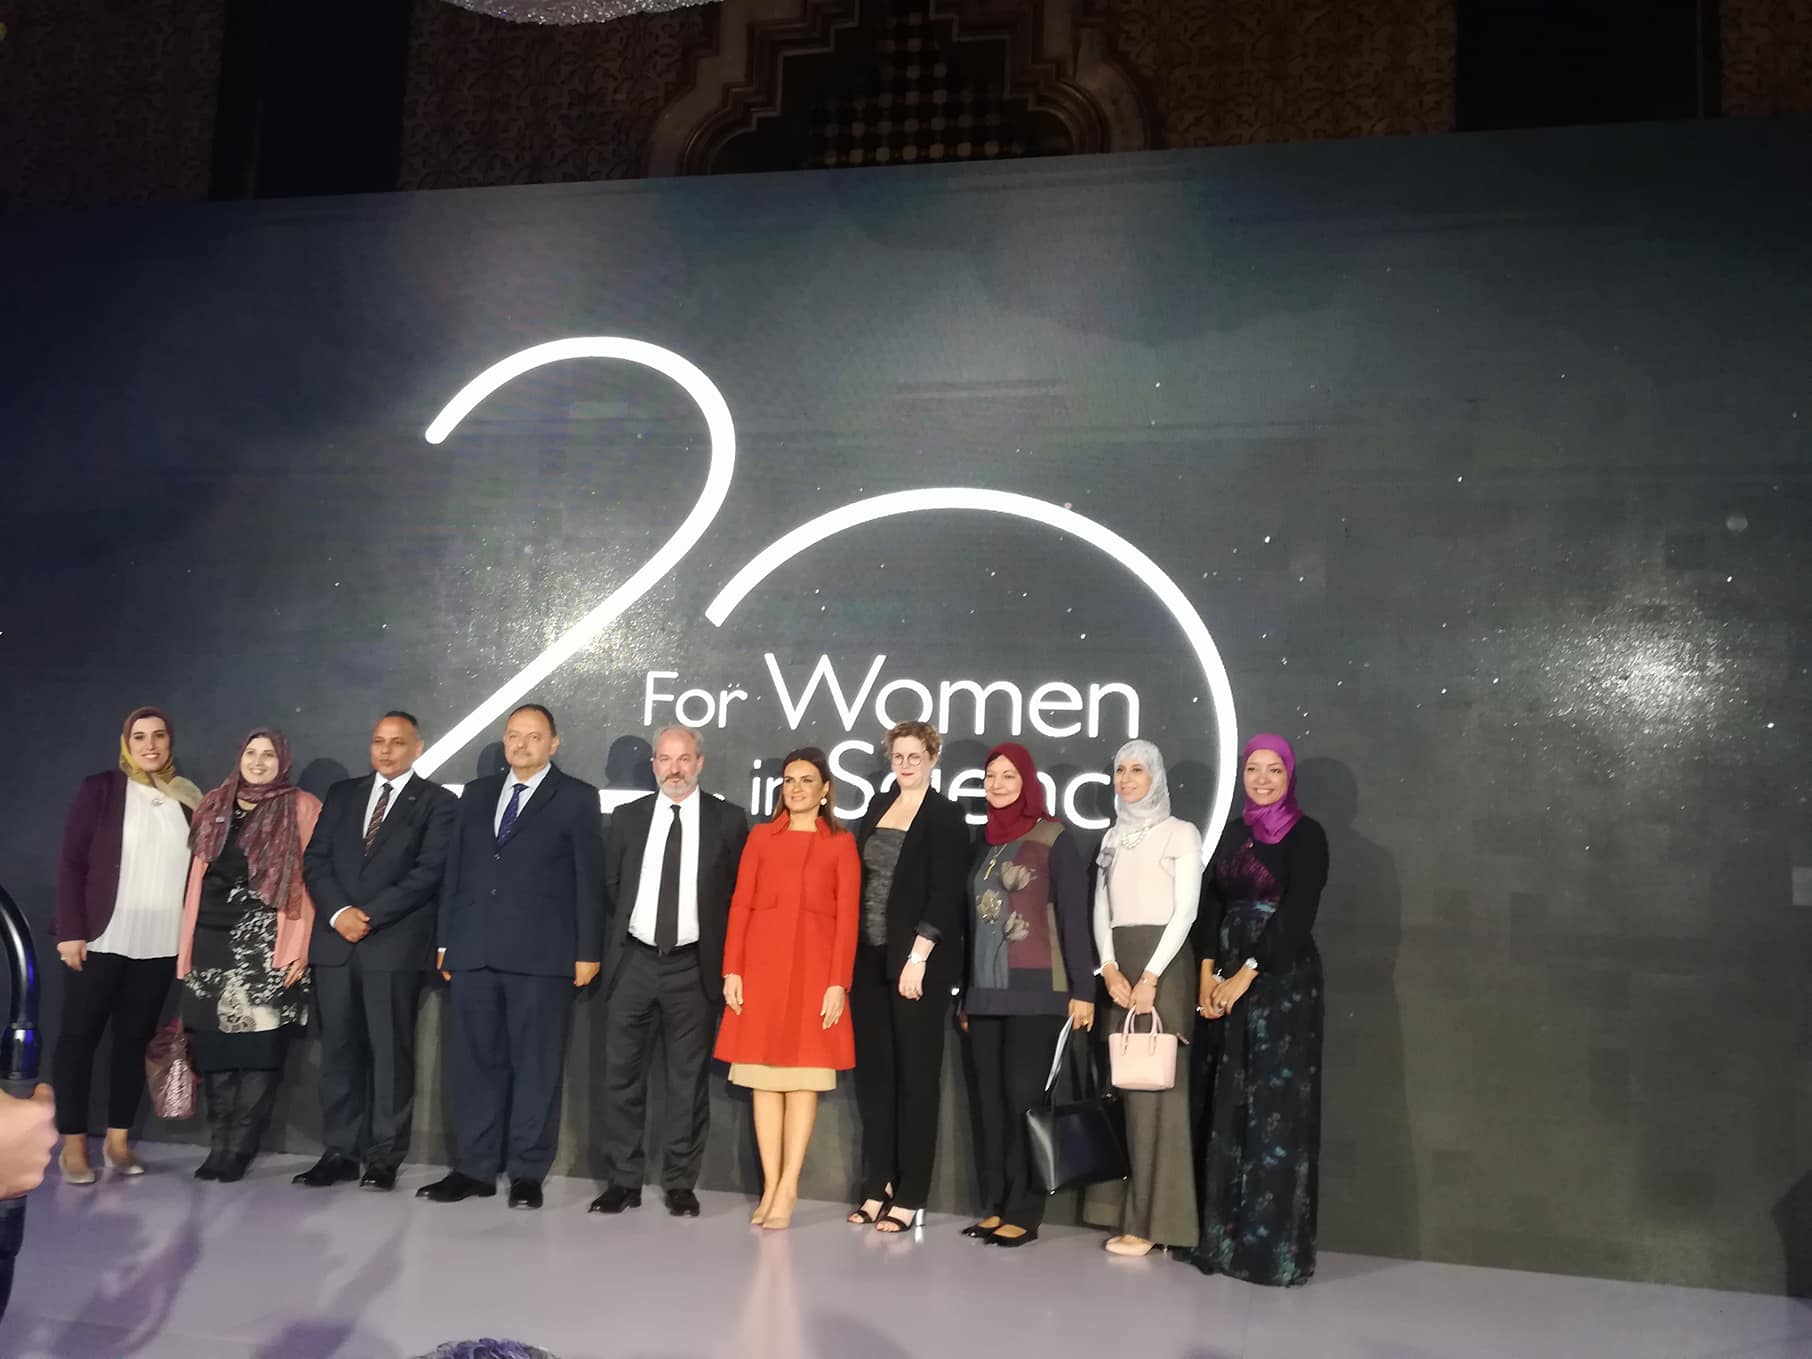 لوريال مصر تطلق نسخة من زمالة يونيسكو المرأة بمشاركة وزيرة الاستثمار